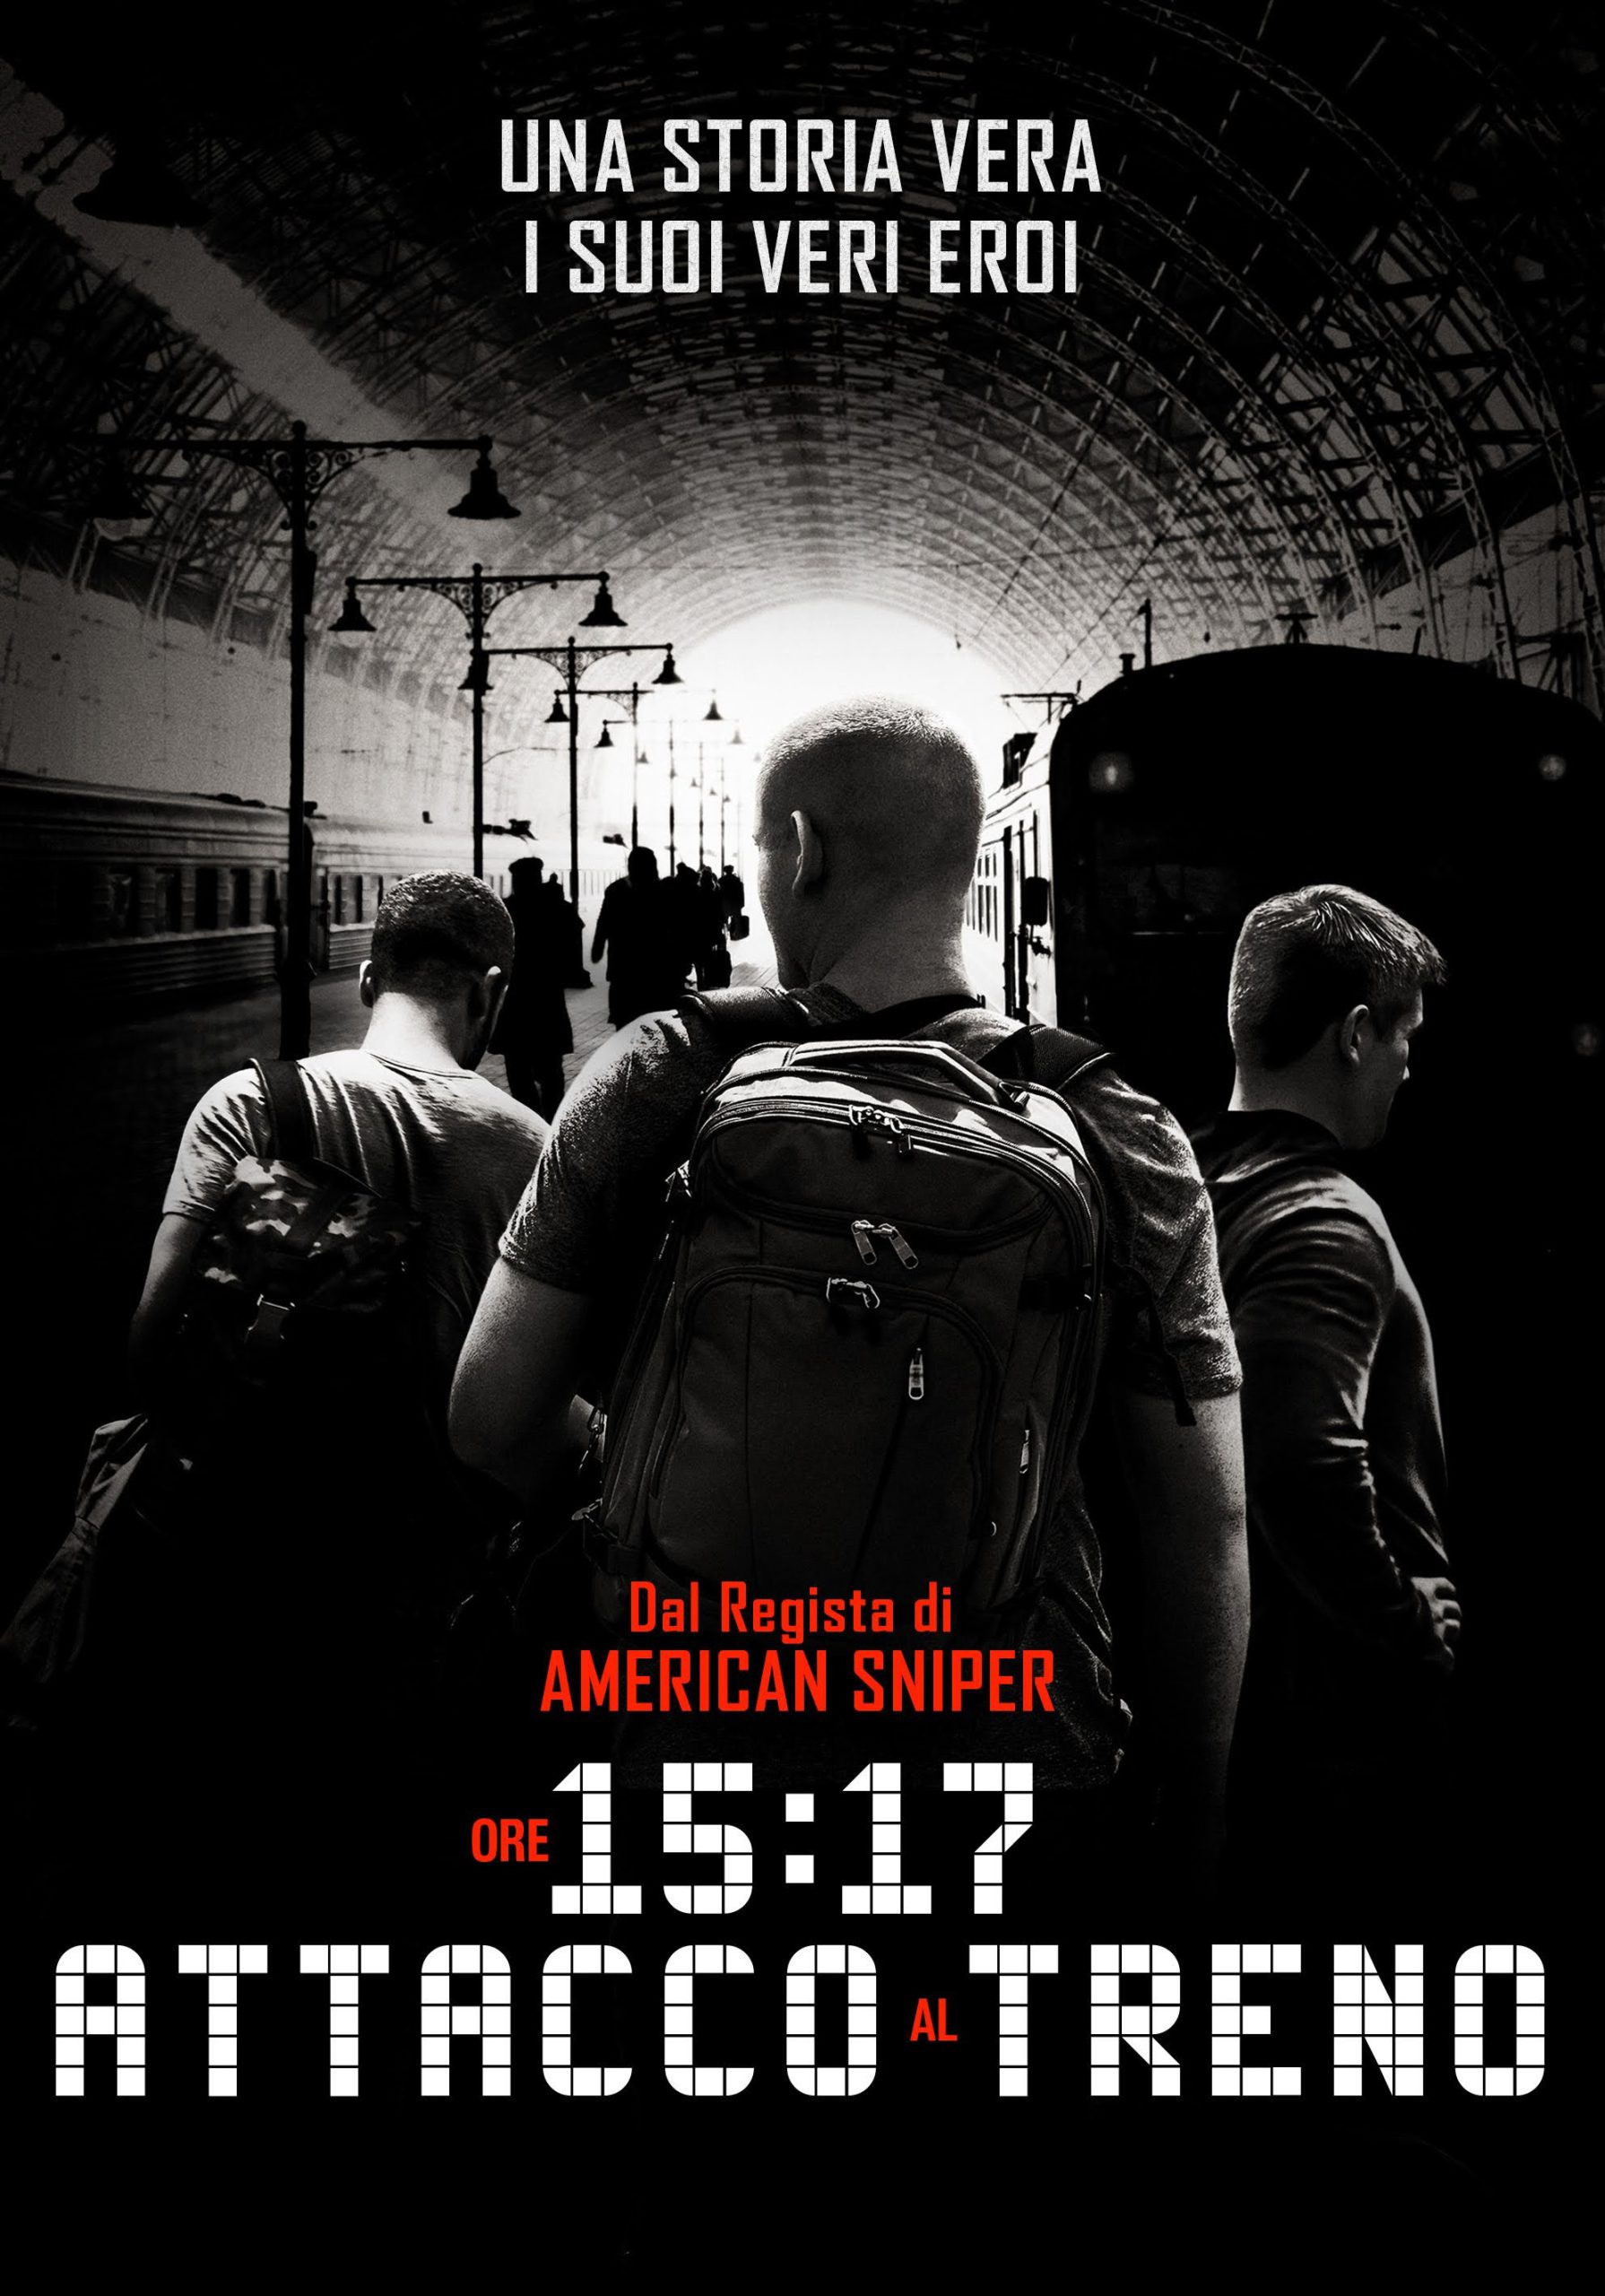 Ore 15:17 – Attacco al treno [HD] (2018)